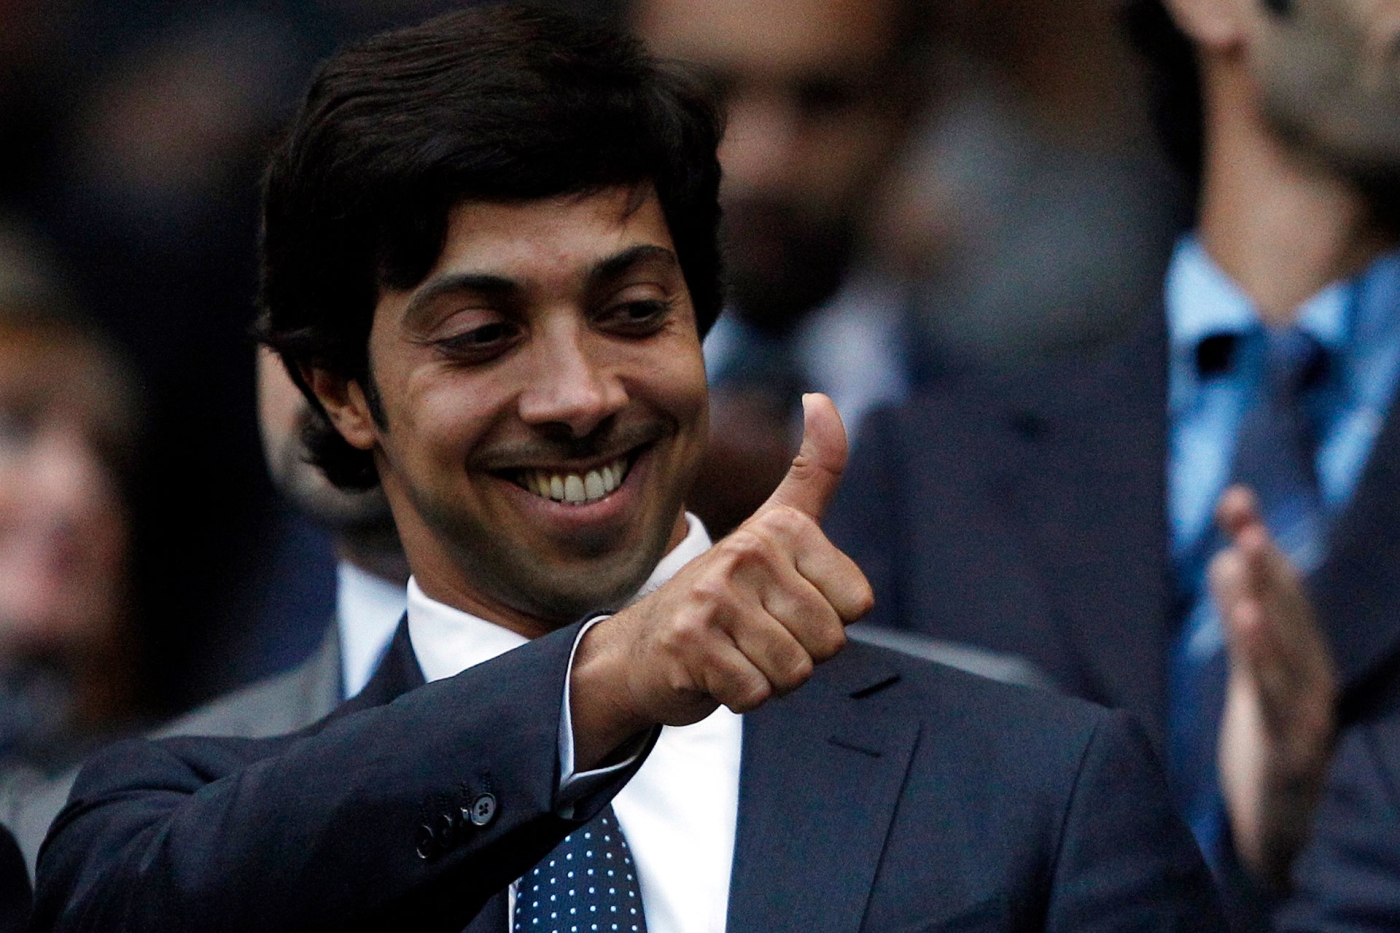 Le cheikh Mansour ben Zayed al-Nahyane, photographié ici à l’occasion d’un match de Manchester City, pourrait faire l’objet d’une enquête des autorités britanniques (Reuters)